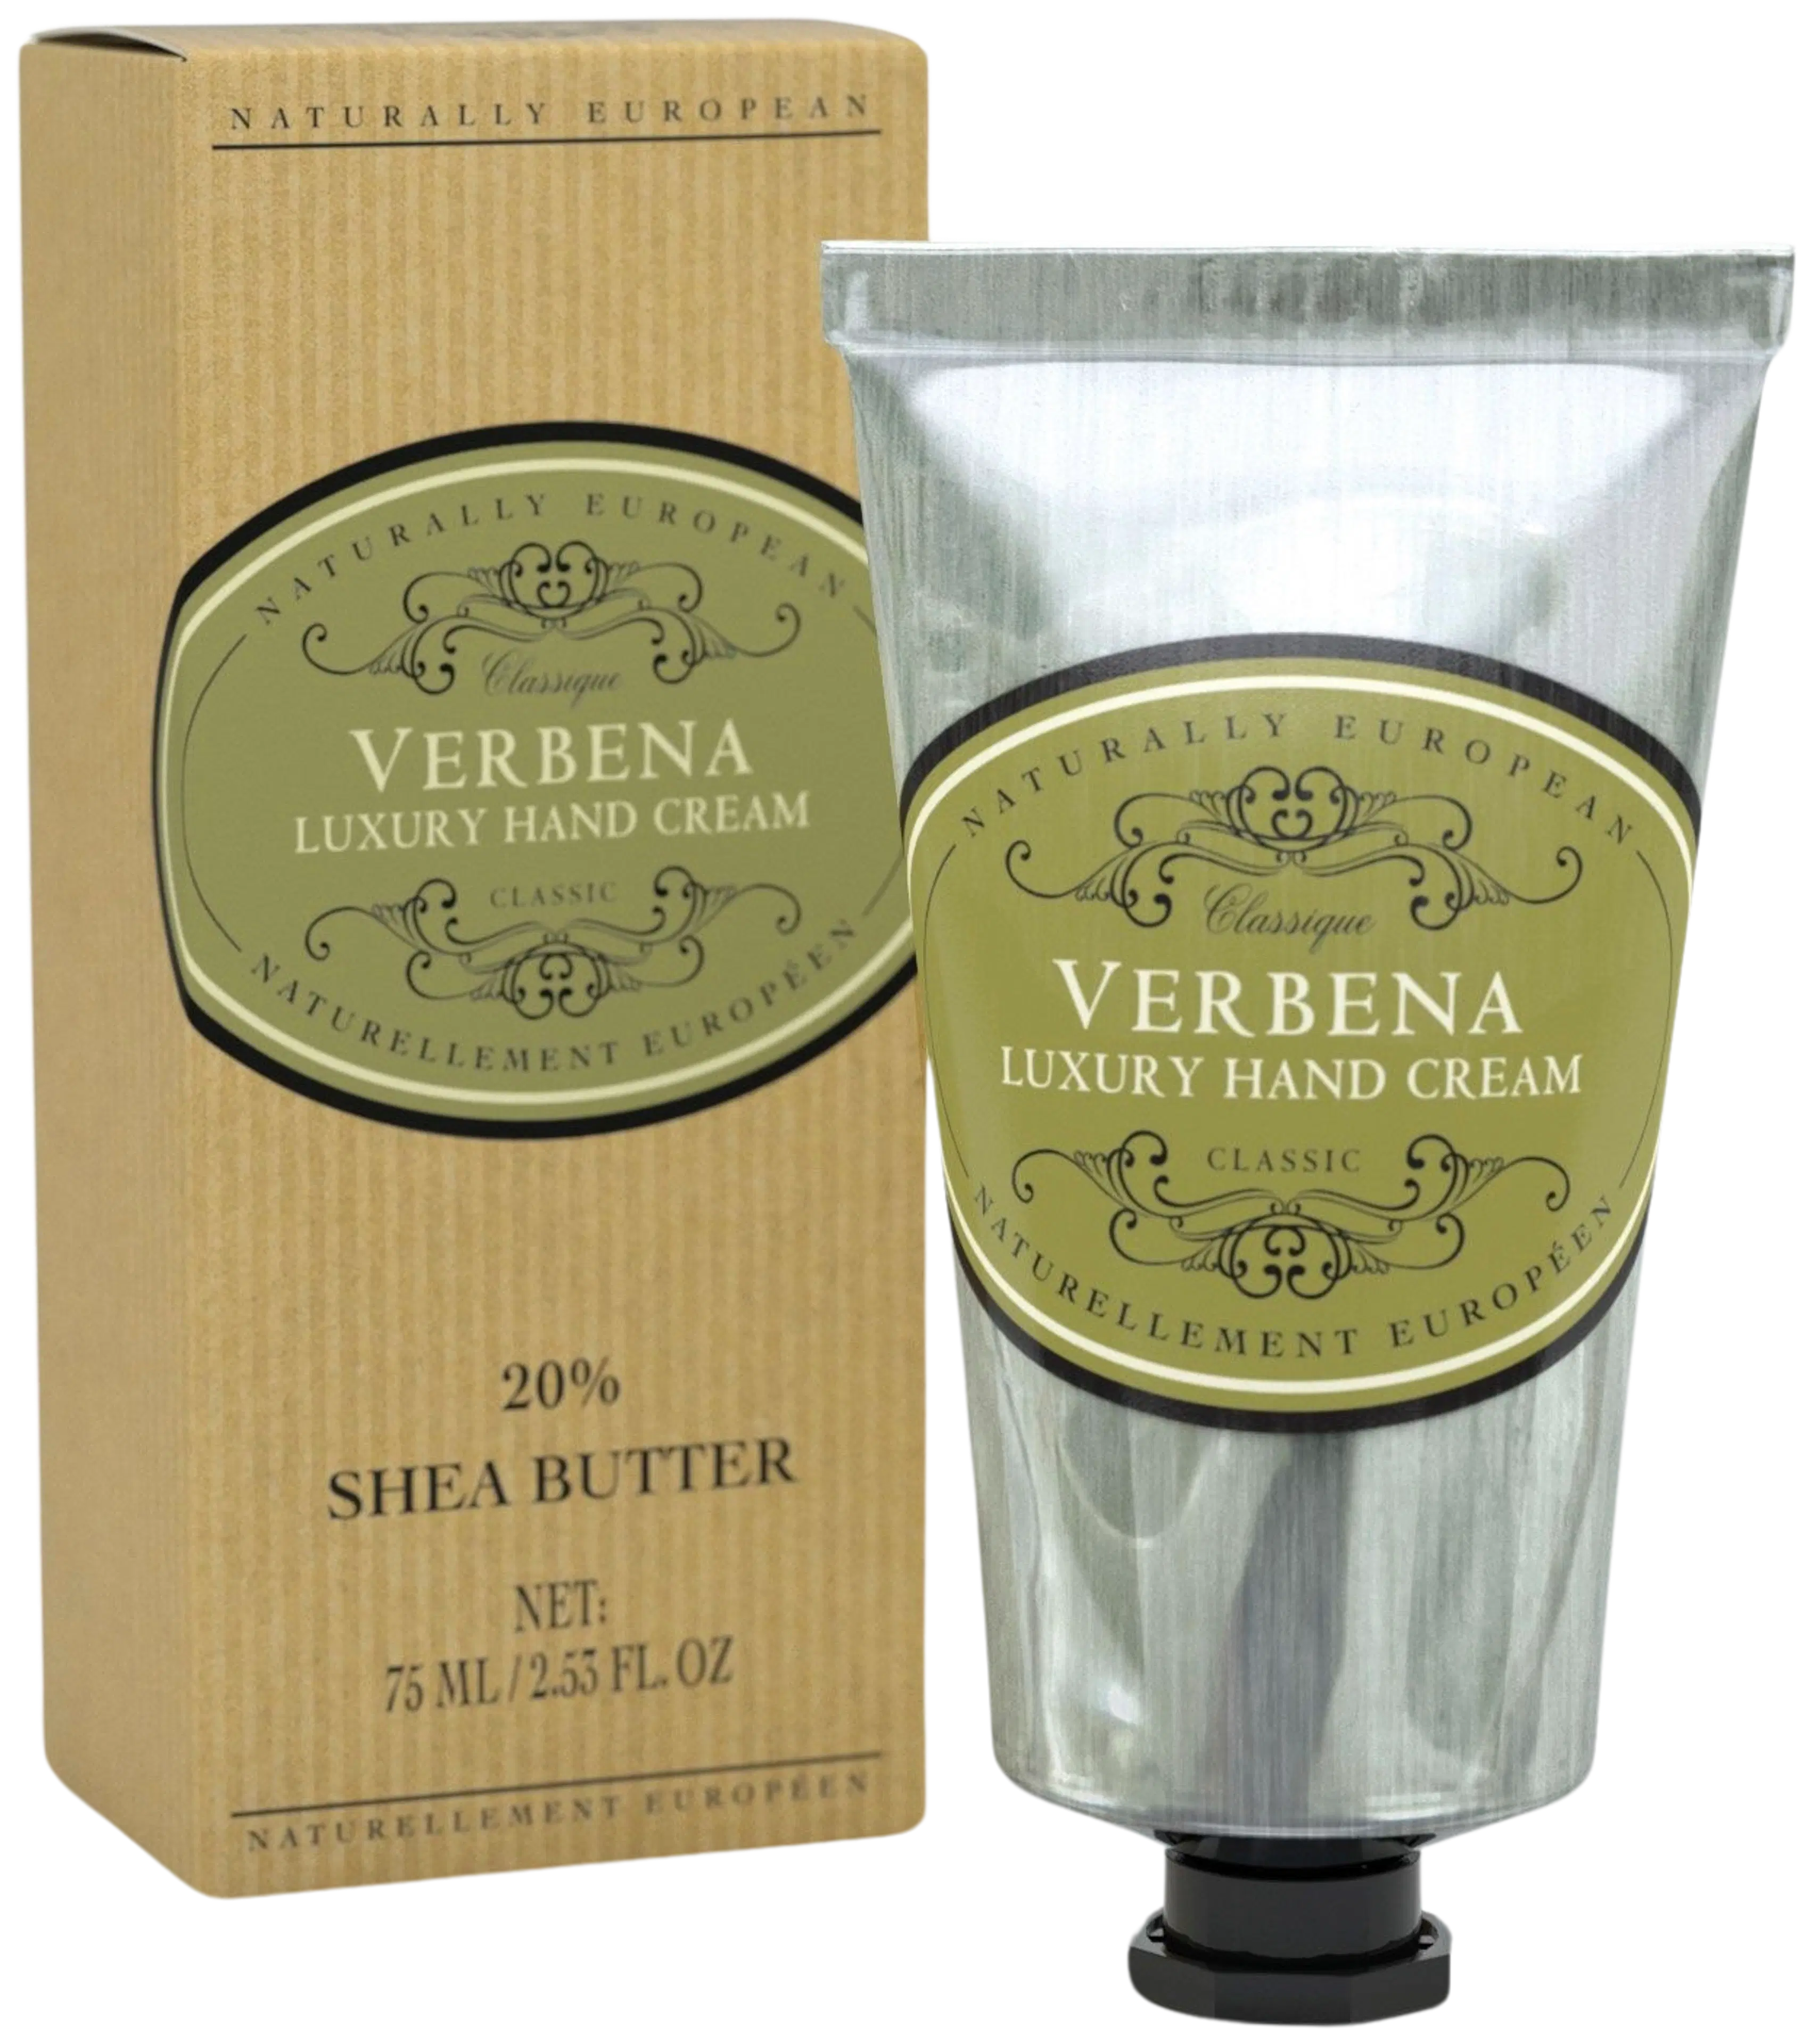 Naturally European Verbena Luxury Hand Cream käsivoide 75 ml